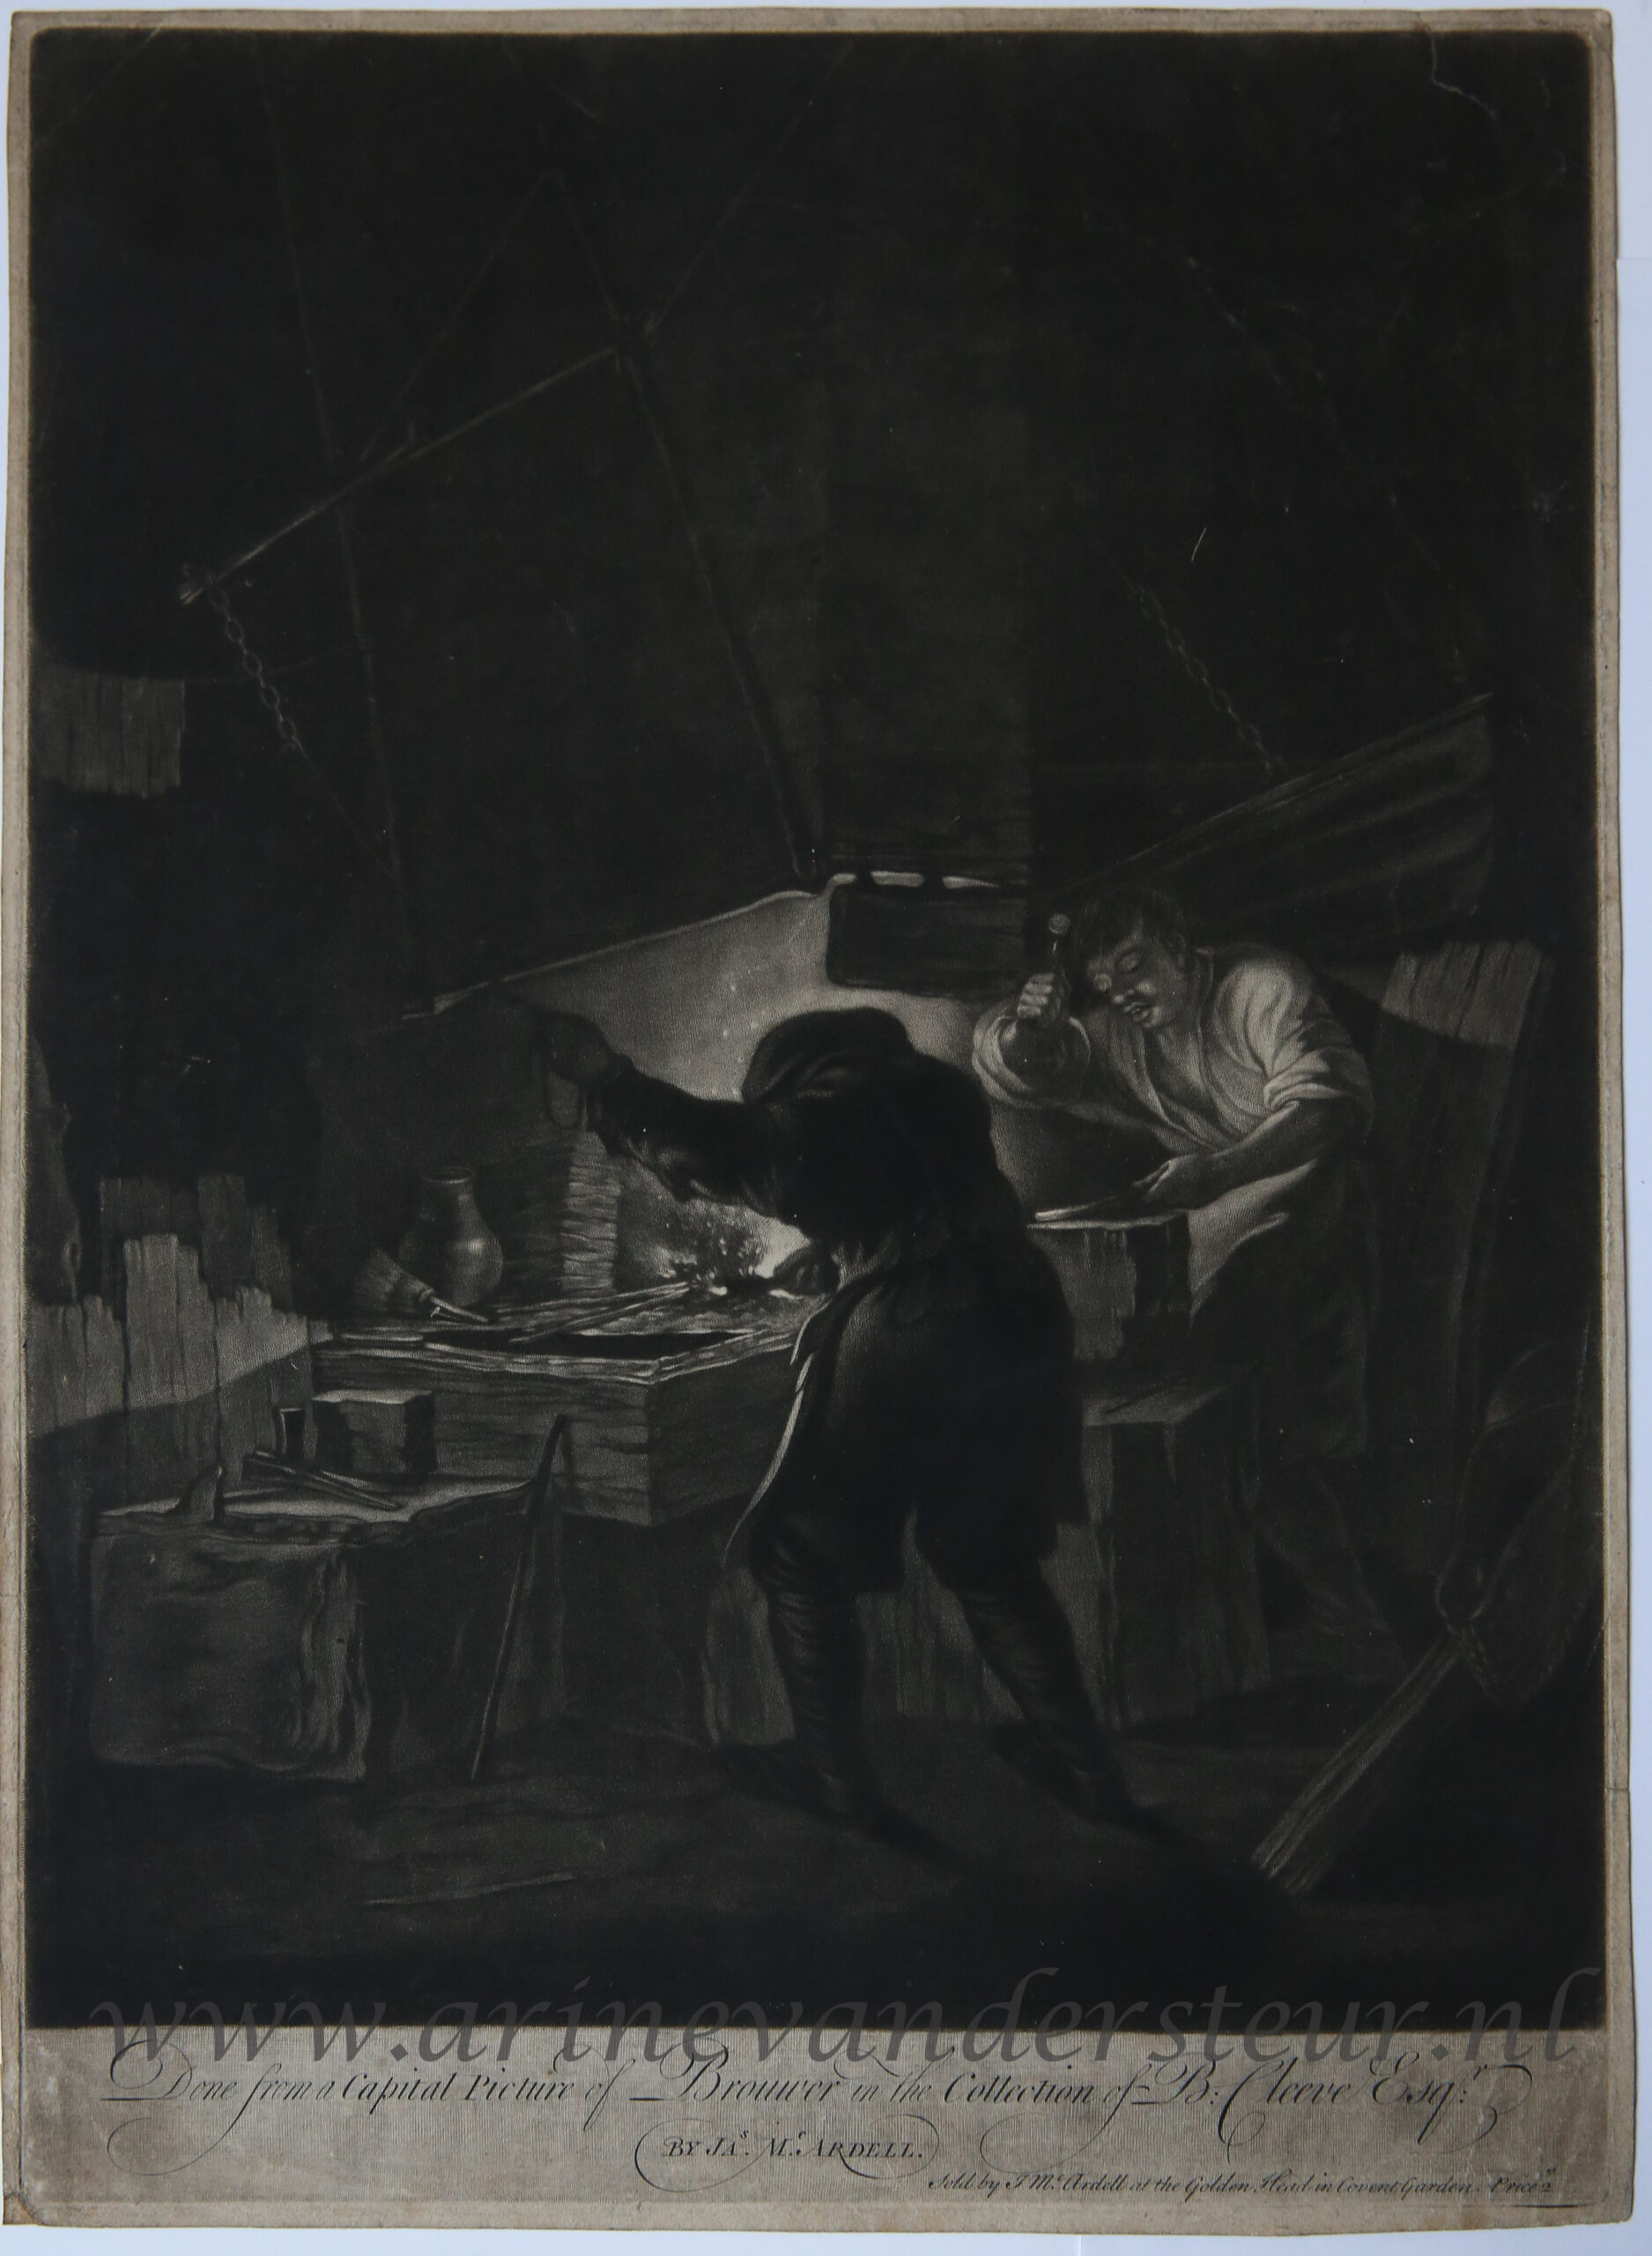 [Antique print, mezzotint] The blacksmith (de smid), published ca. 1750.